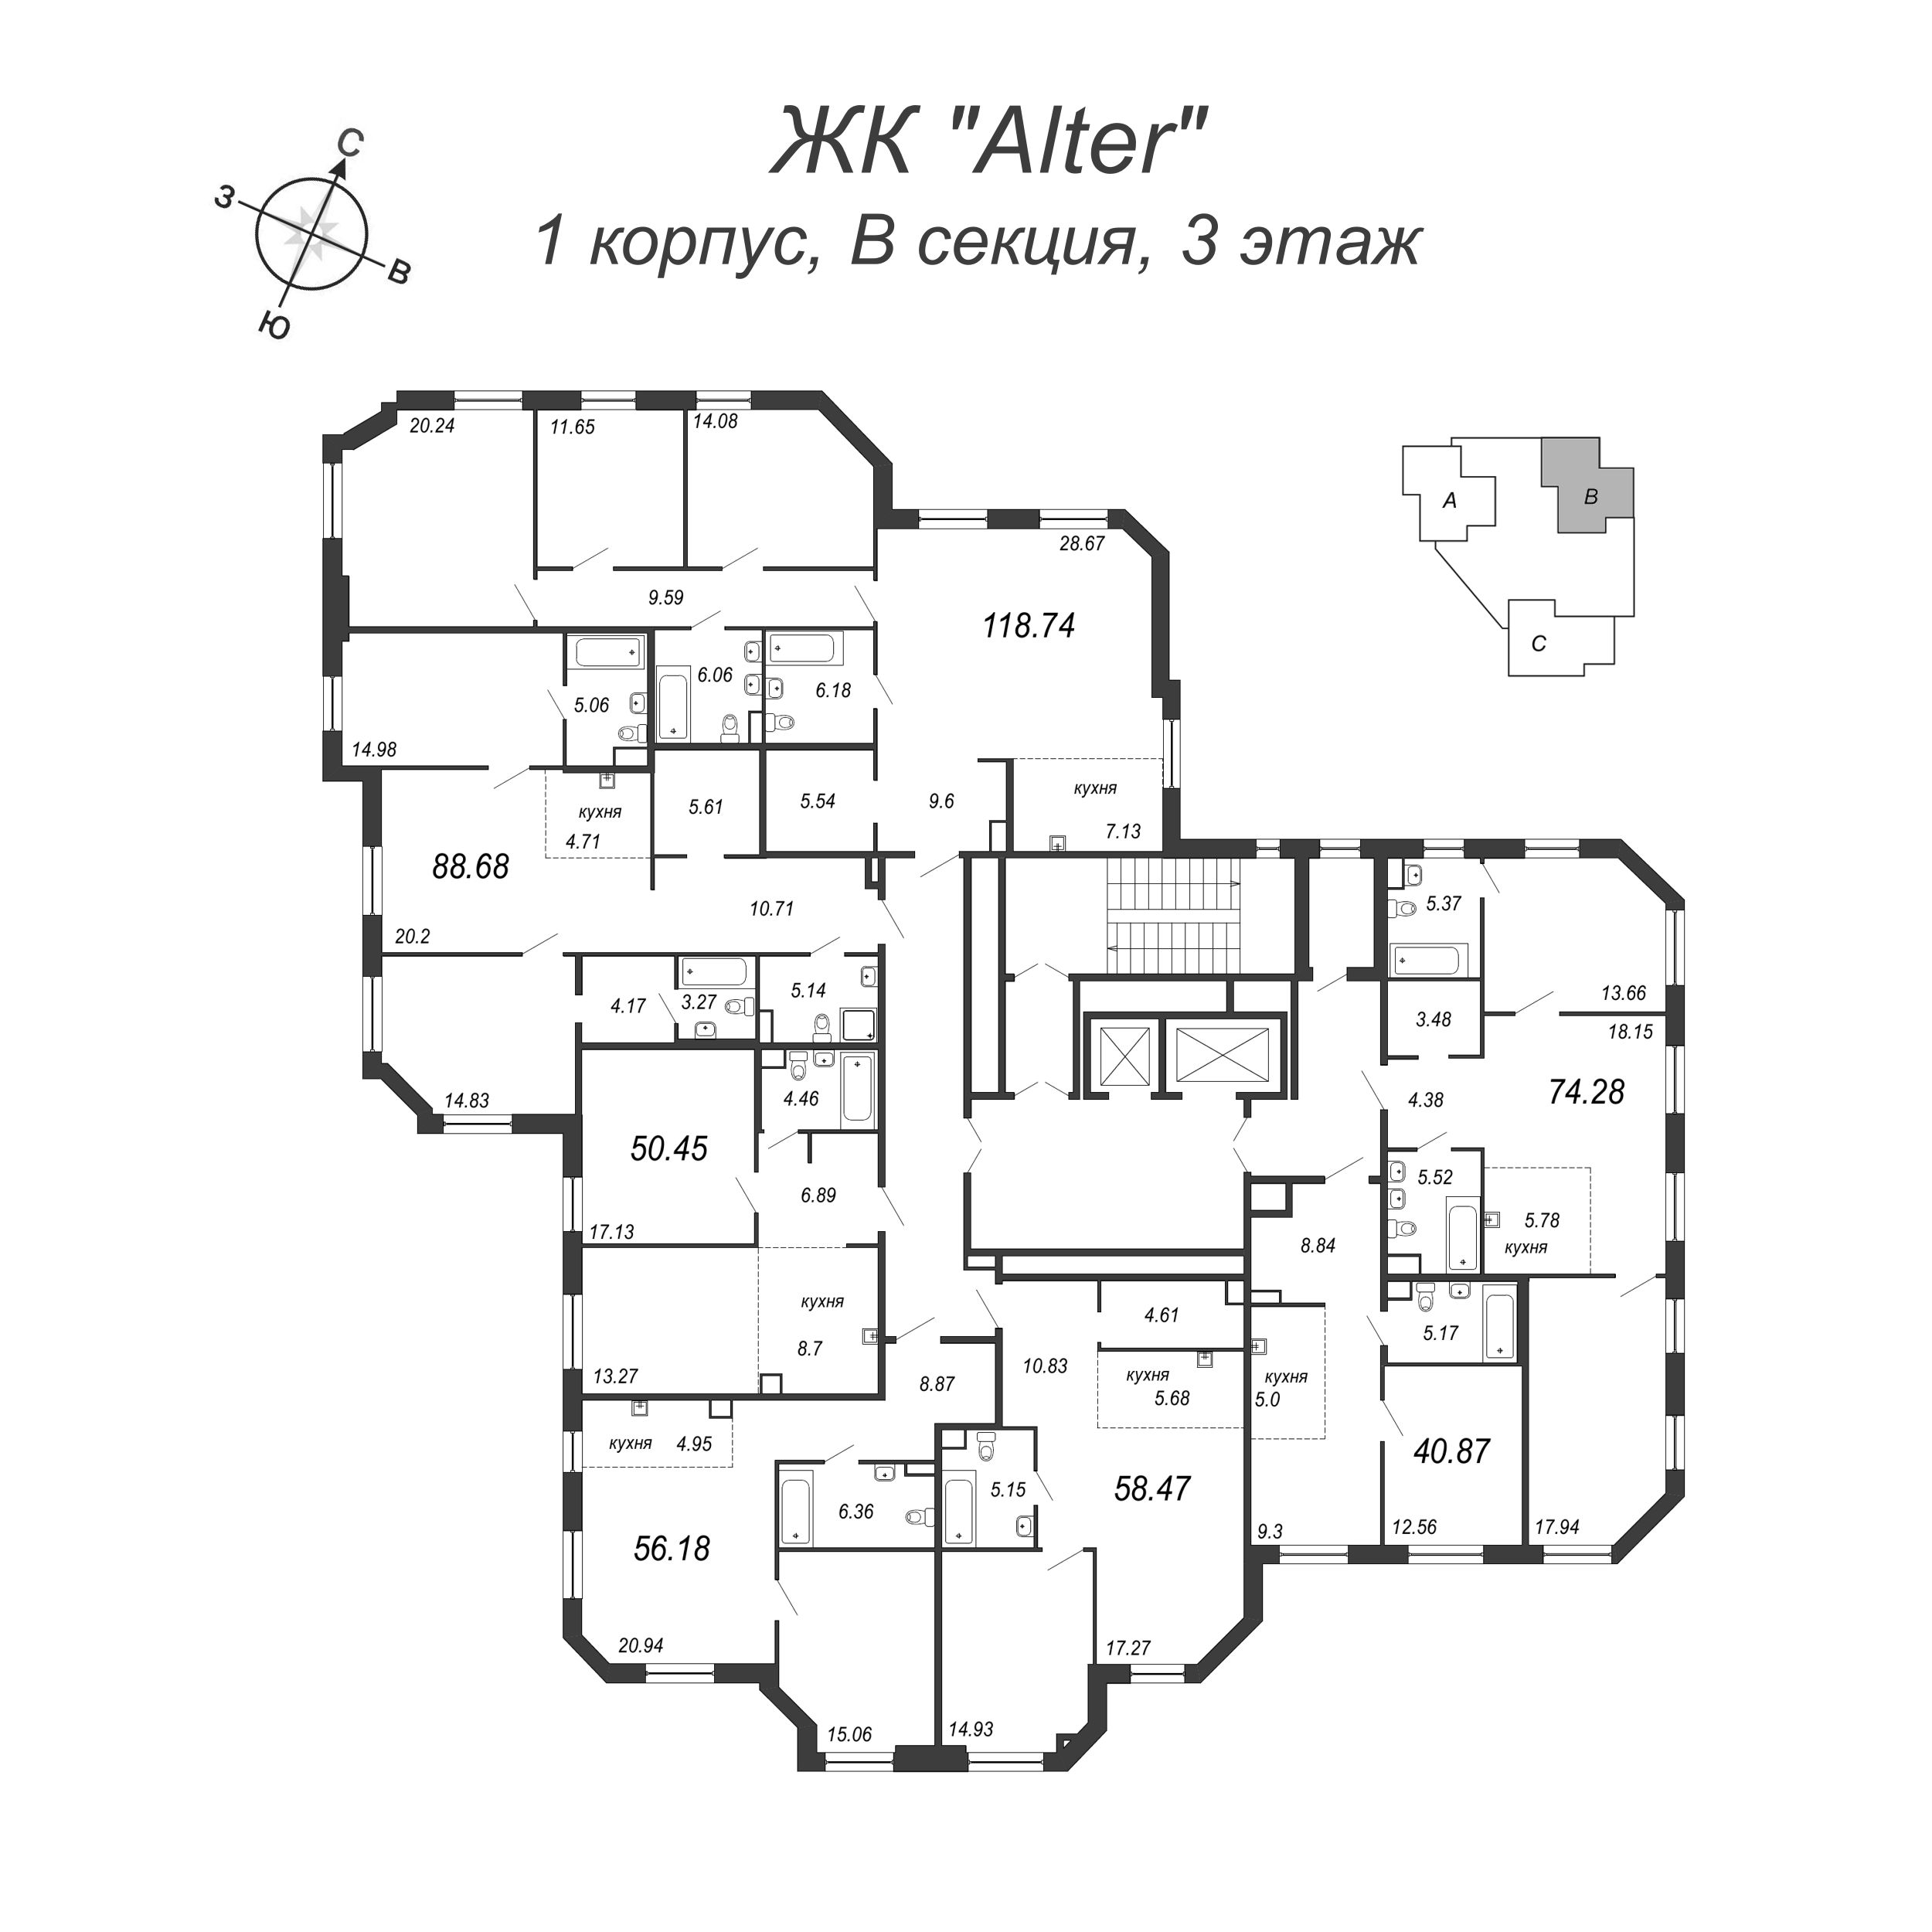 2-комнатная (Евро) квартира, 40.9 м² в ЖК "Alter" - планировка этажа